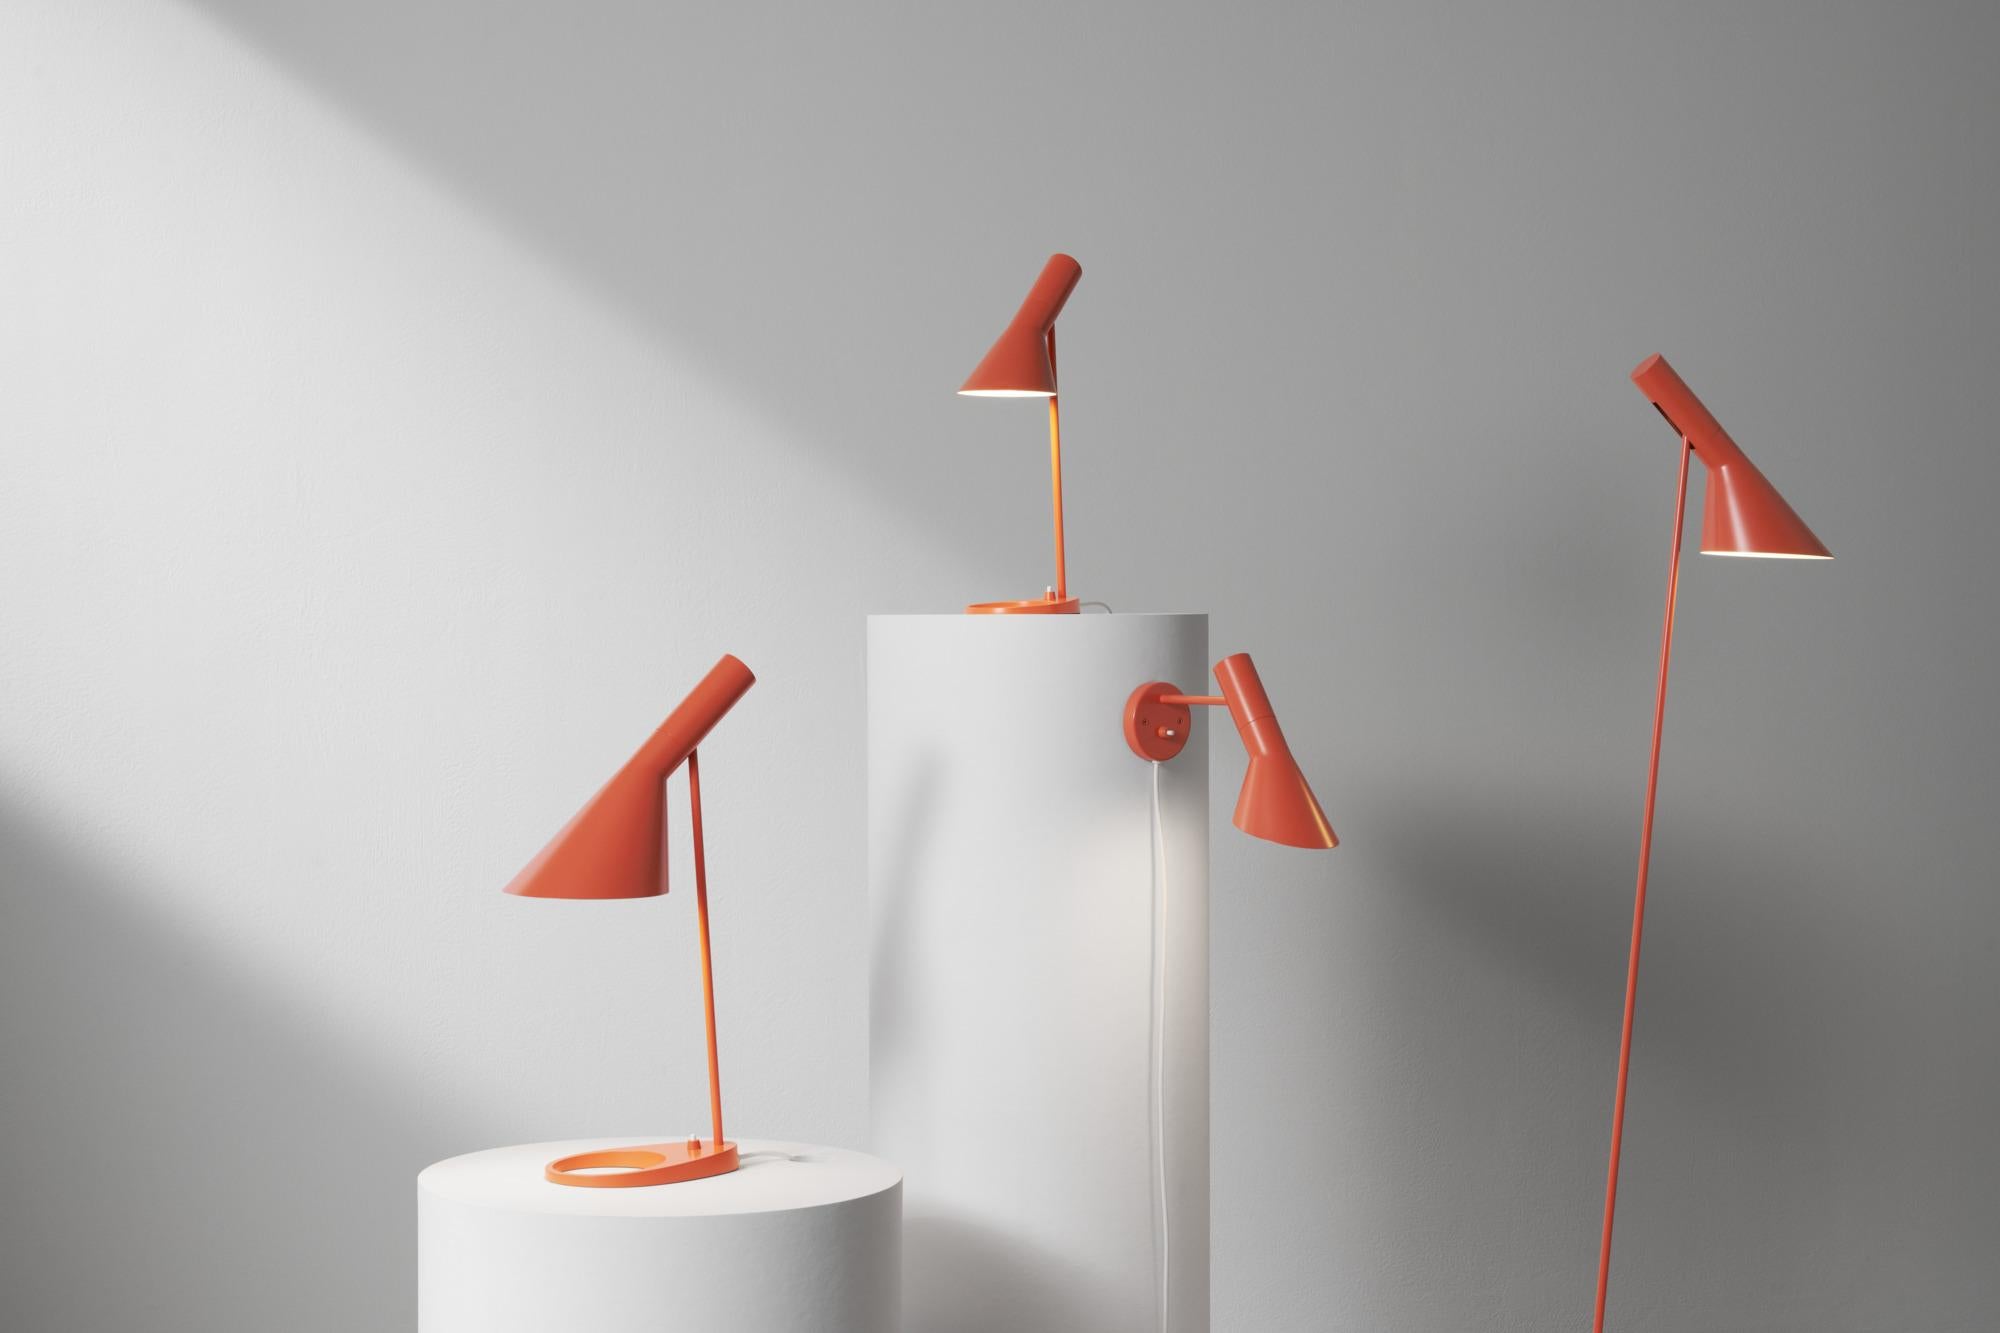 Applique AJ de Arne Jacobsen pour Louis Poulsen en orange électrique.

La série AJ faisait partie de l'éclairage conçu par Jacobsen pour l'hôtel SAS Royal original. Aujourd'hui, ses designs de meubles et de luminaires sont recherchés par les